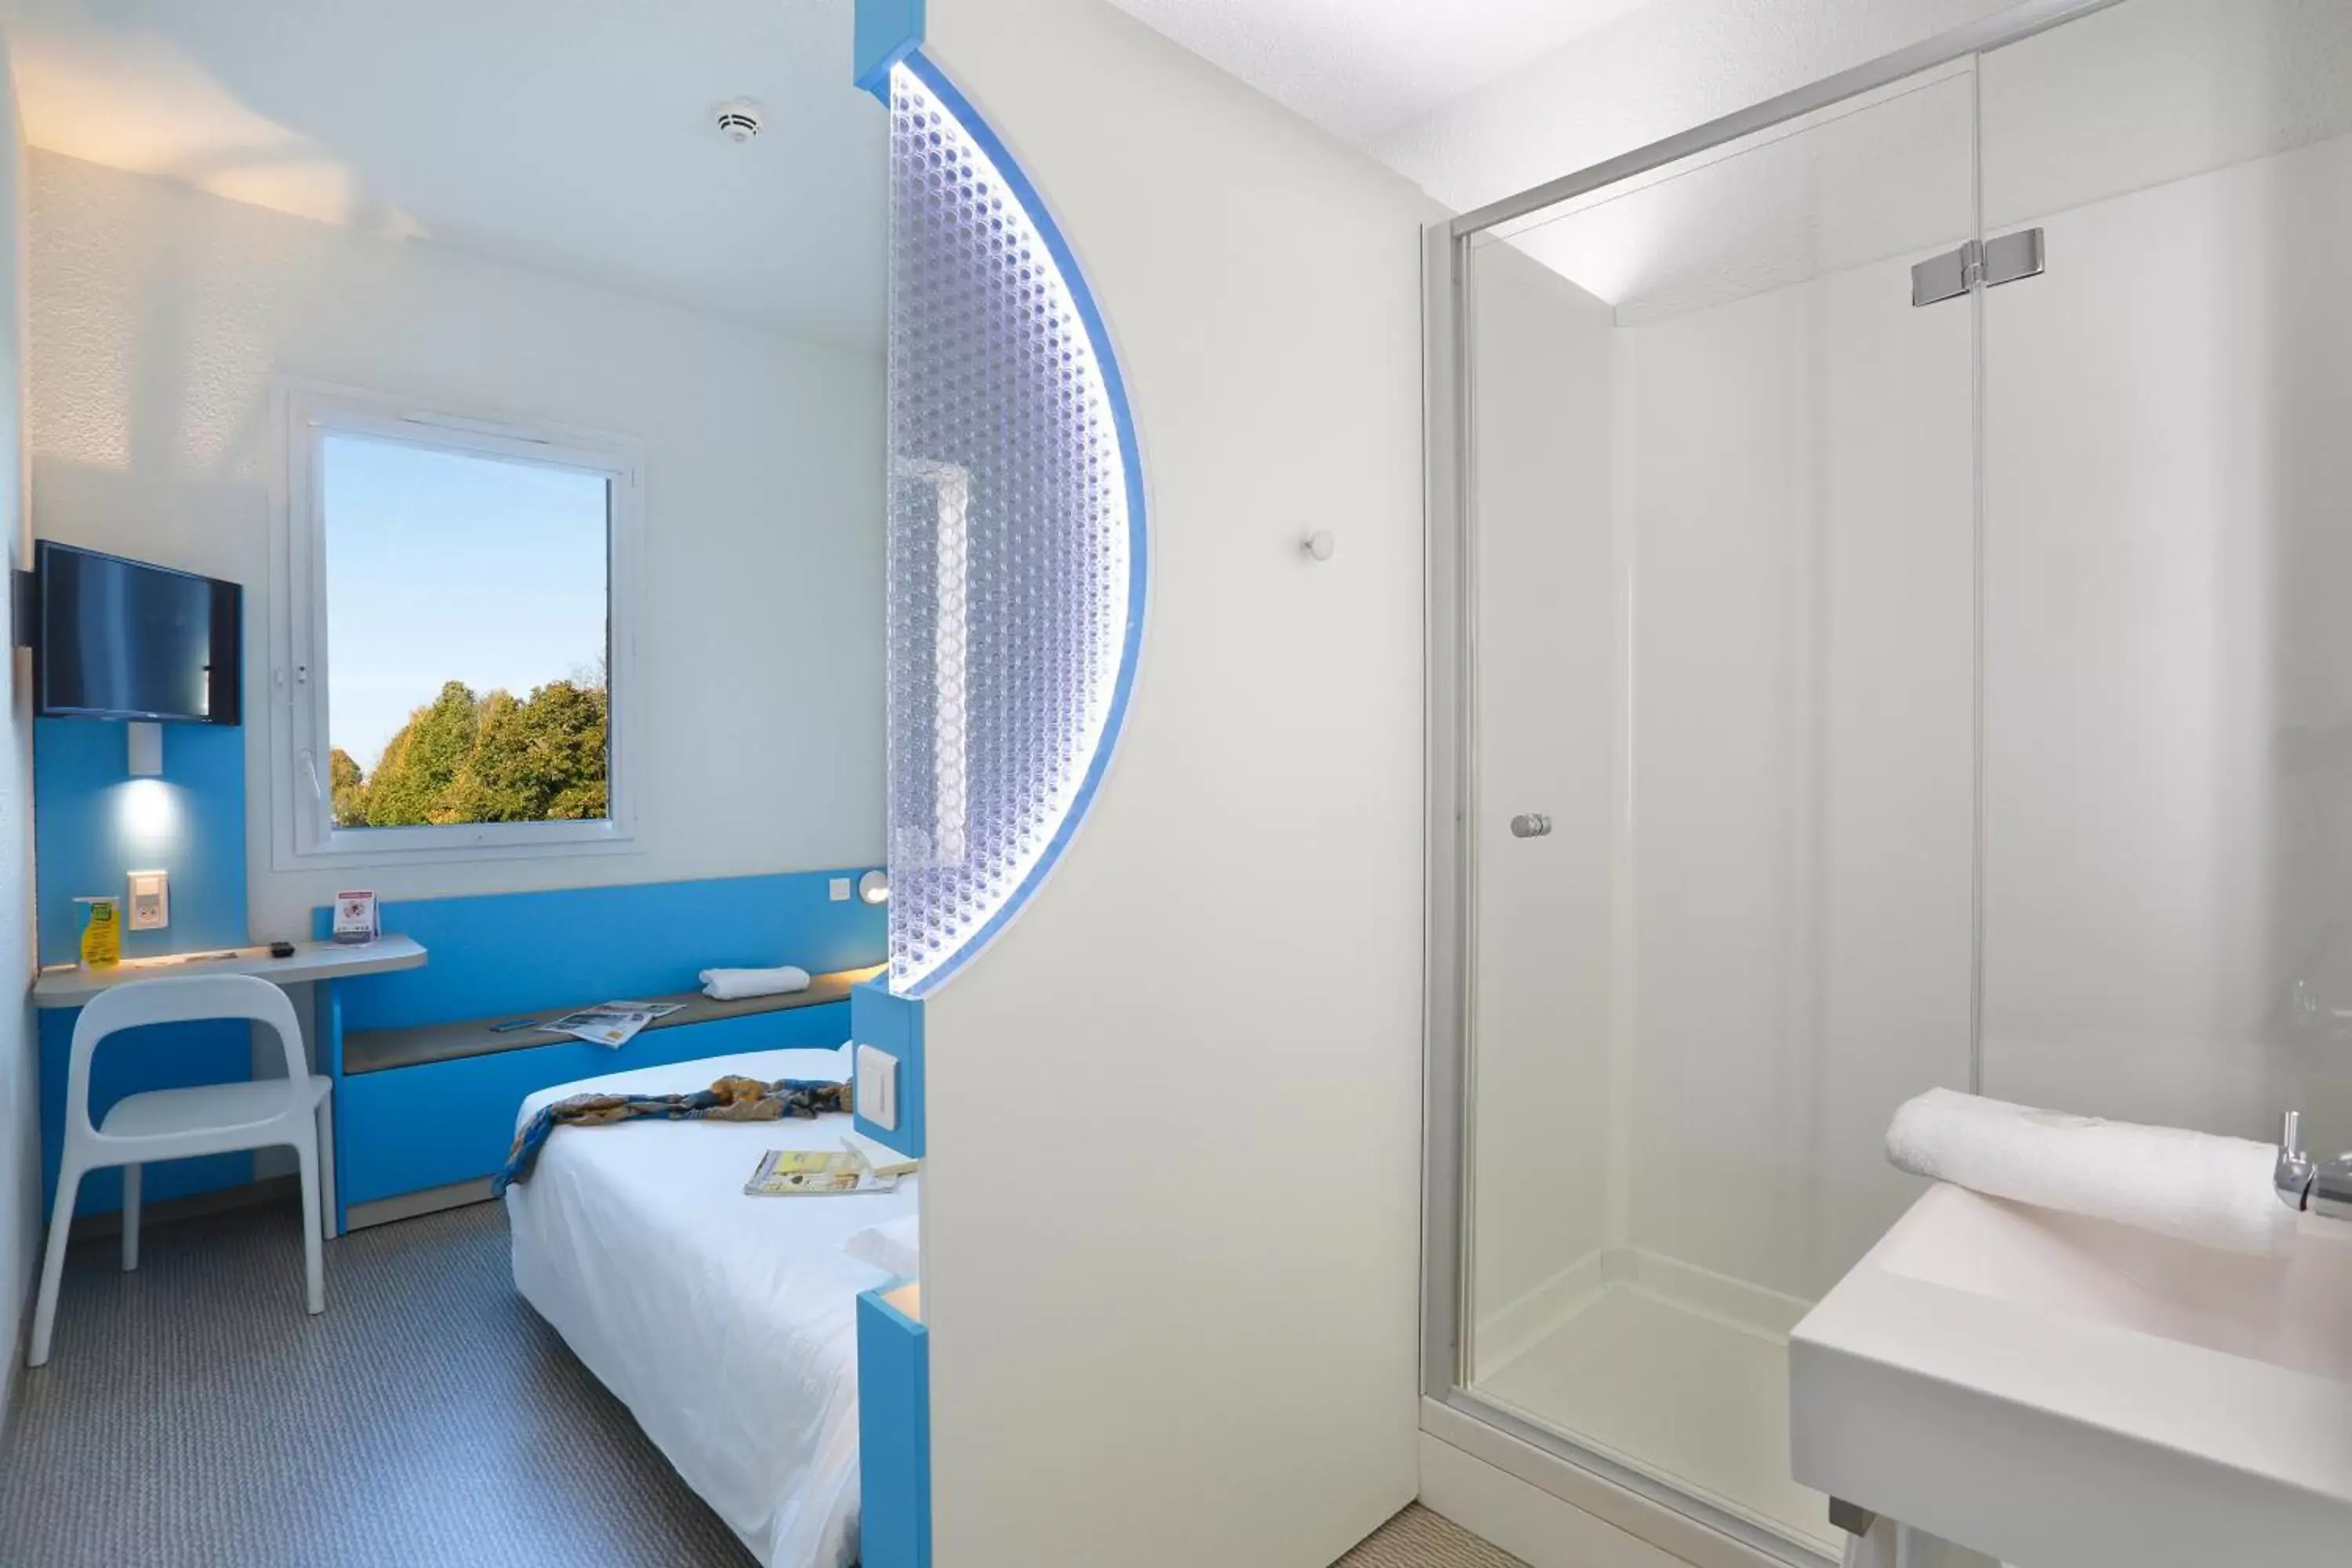 Bedroom, Bathroom in First Inn Hotel Paris Sud Les Ulis